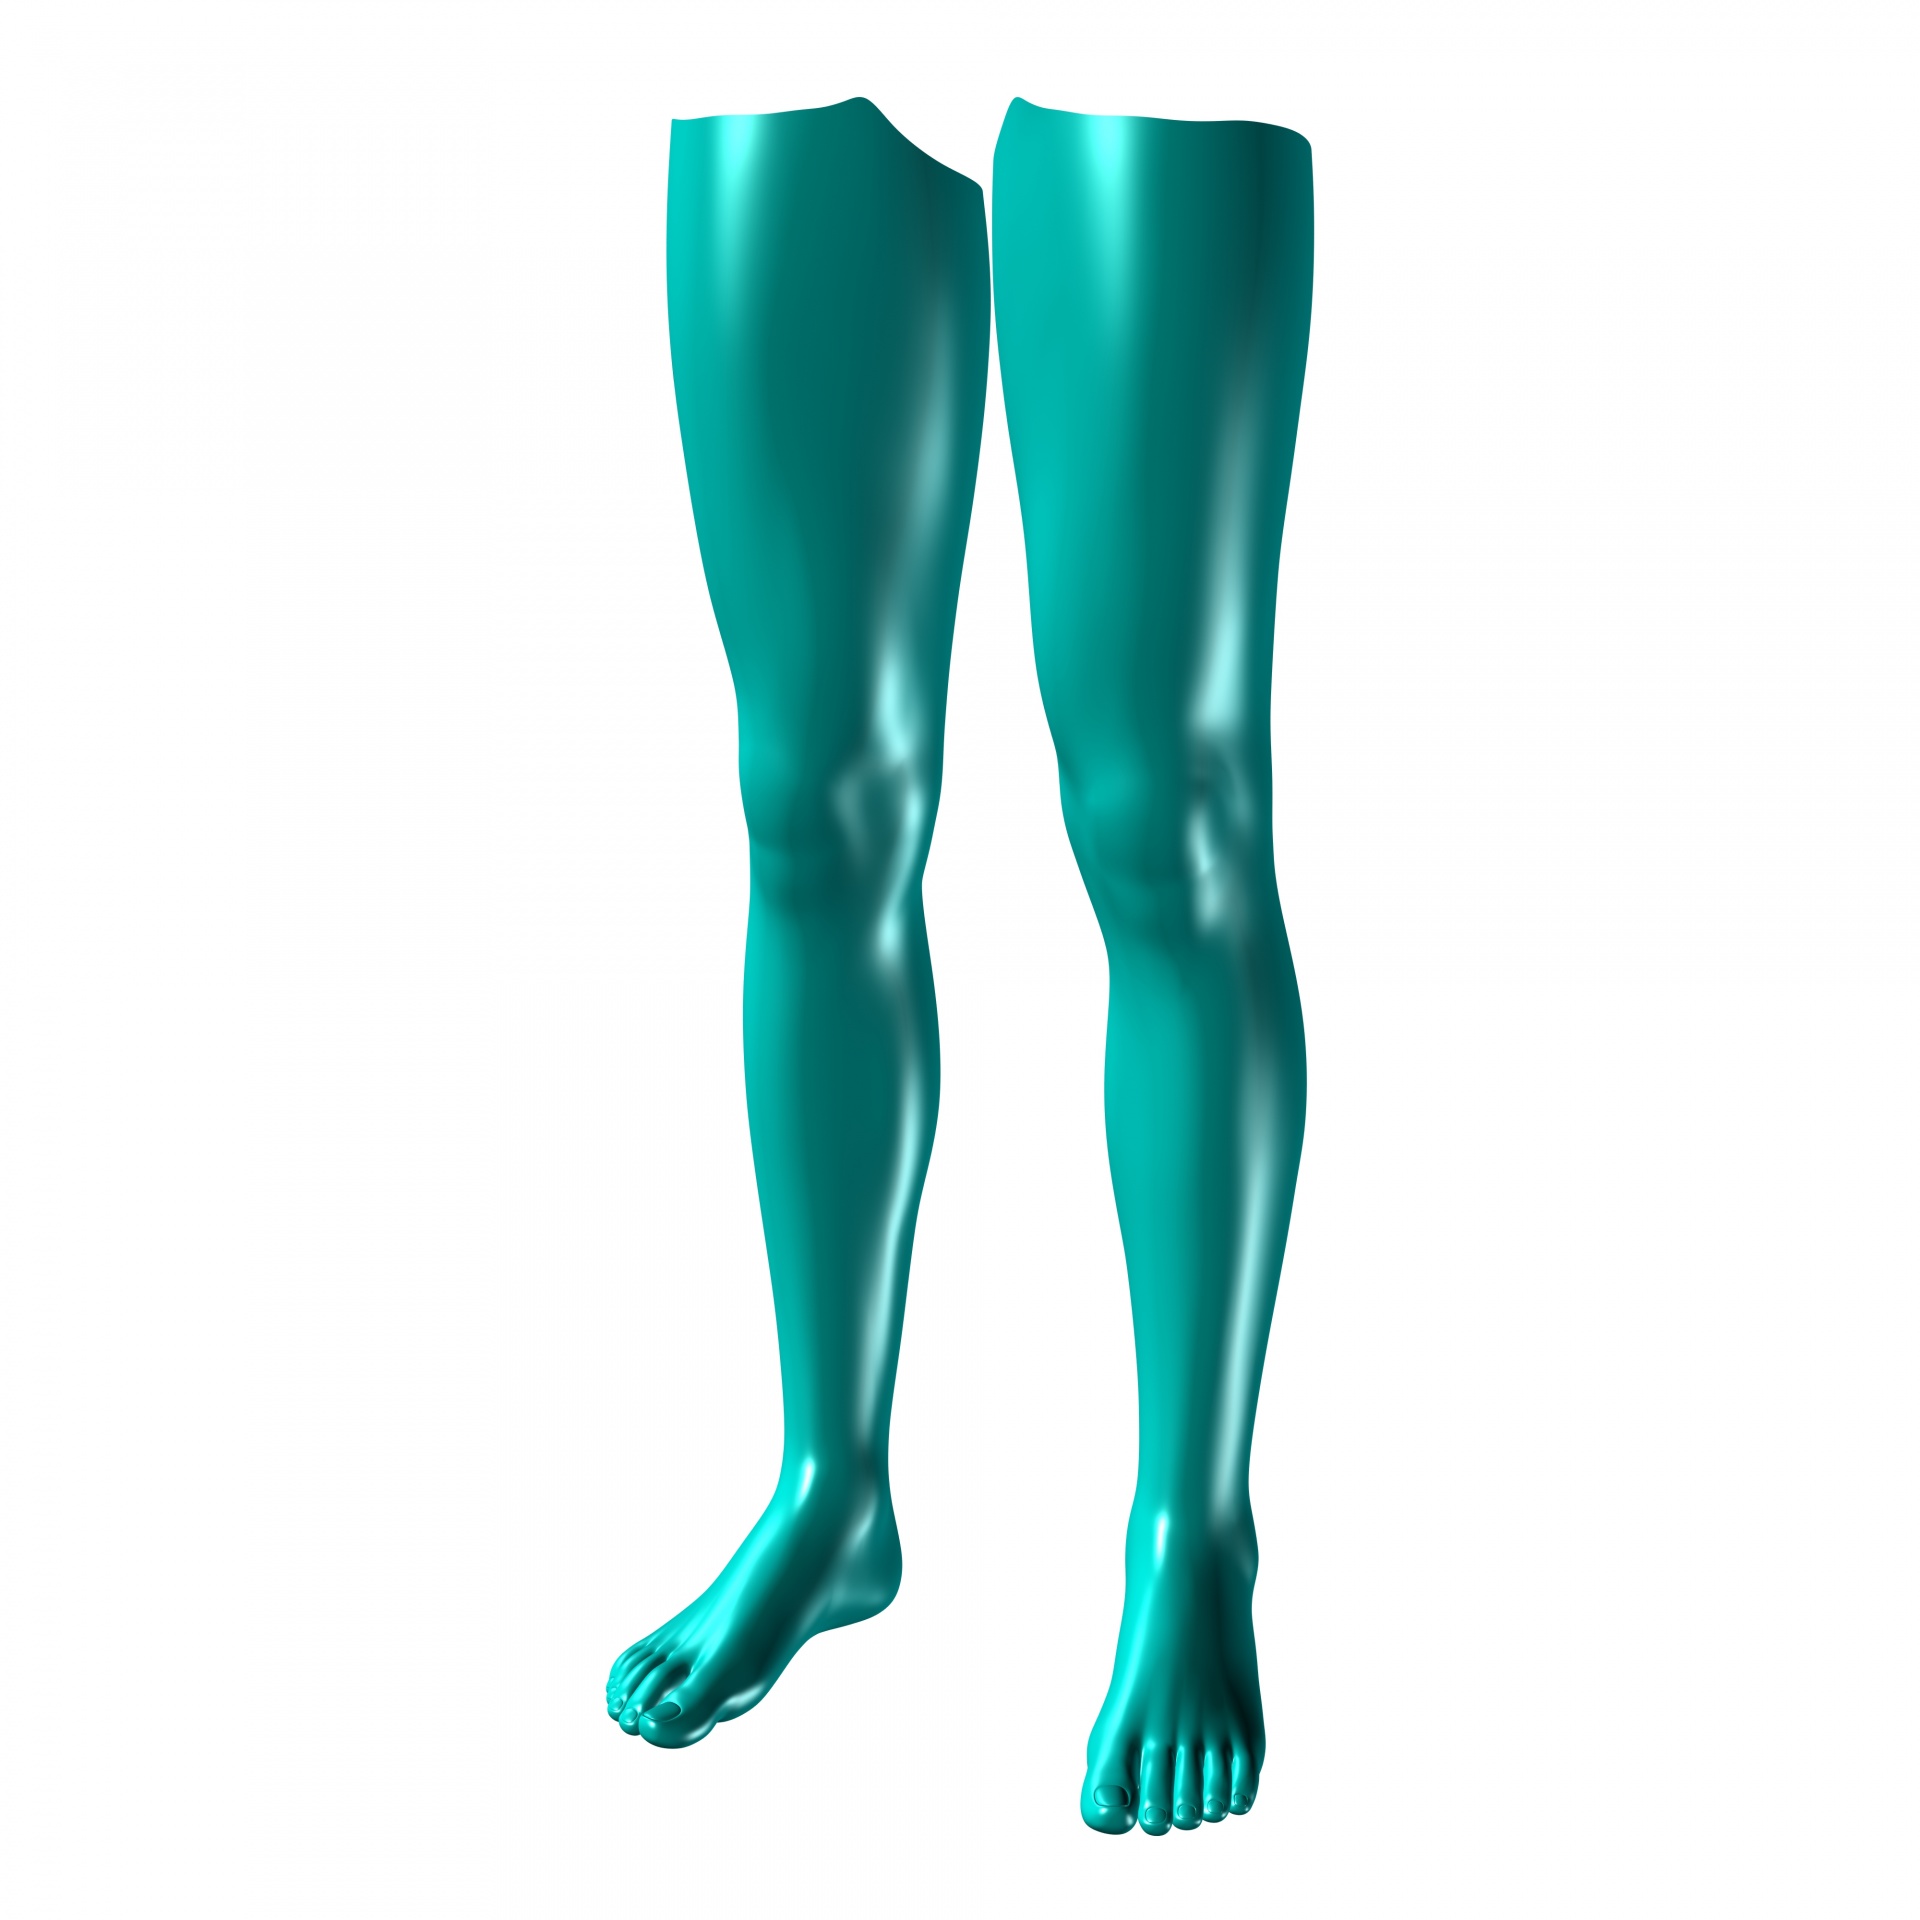 Green legs. Зеленые ноги. Для ног. Ноги на зеленом фоне. Зеленые ступни.